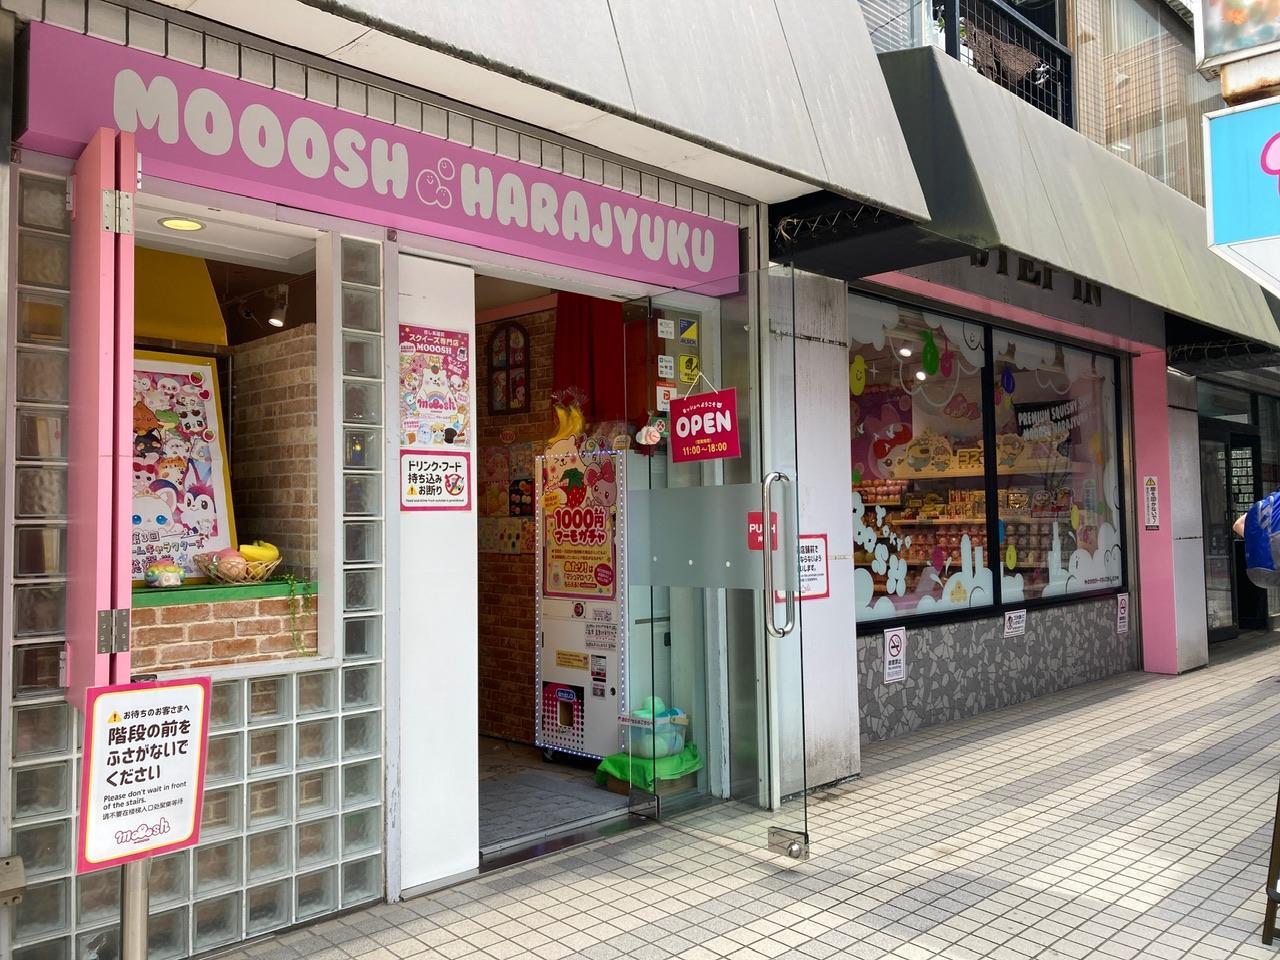 MOOOSH SQUISHY (モッシュスクイーズ）原宿店